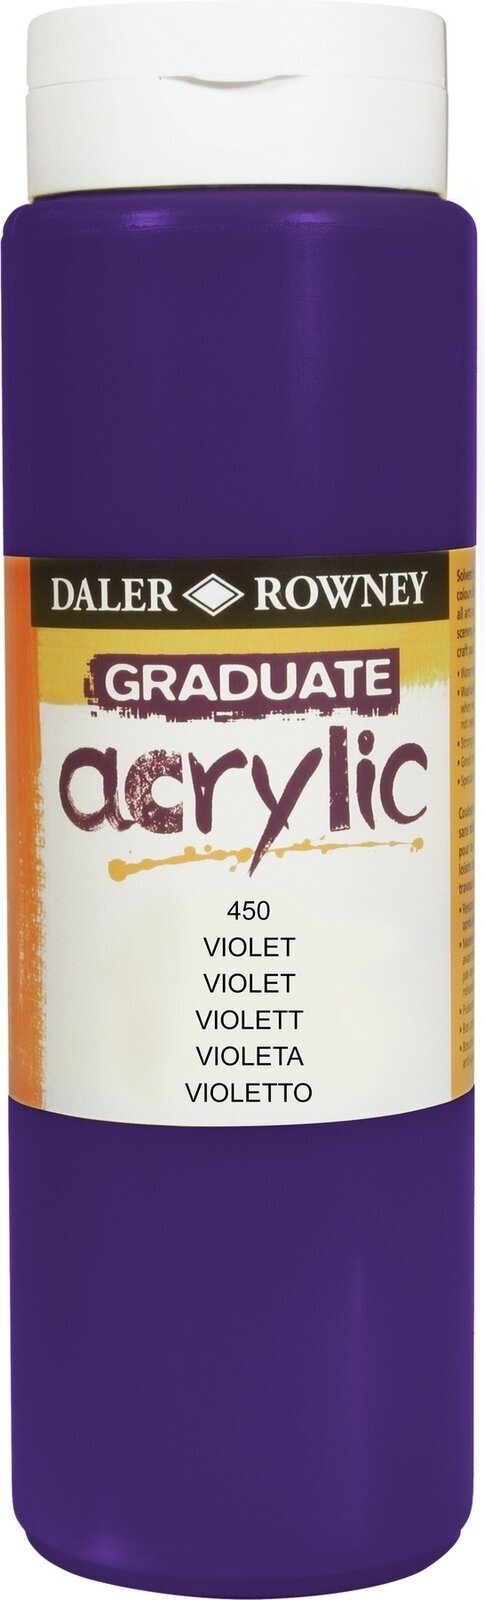 Akrilna boja Daler Rowney Graduate Akrilna boja Violet 500 ml 1 kom